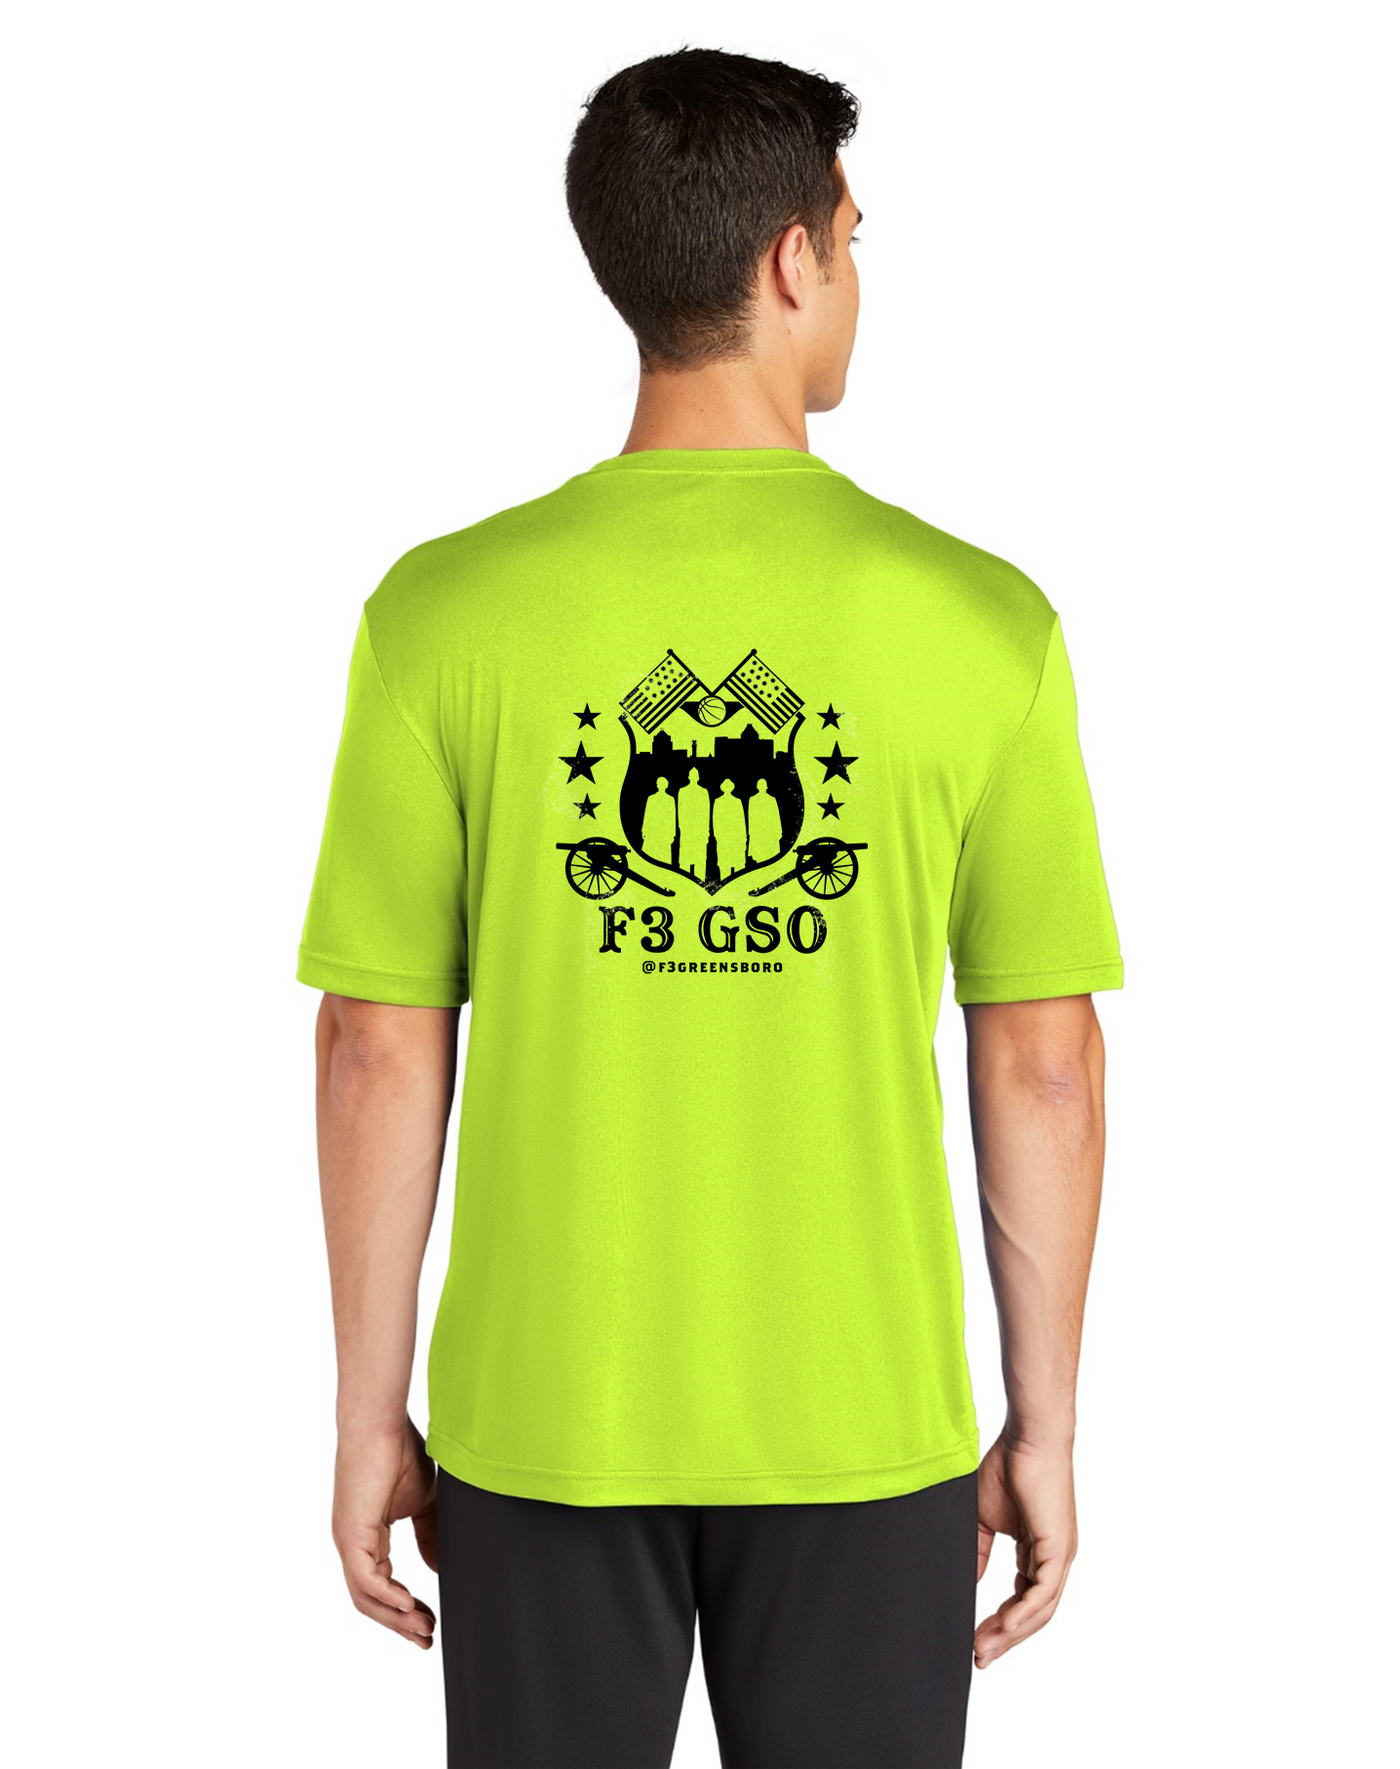 F3 Greensboro Neon Shirts Pre-Order April 2022